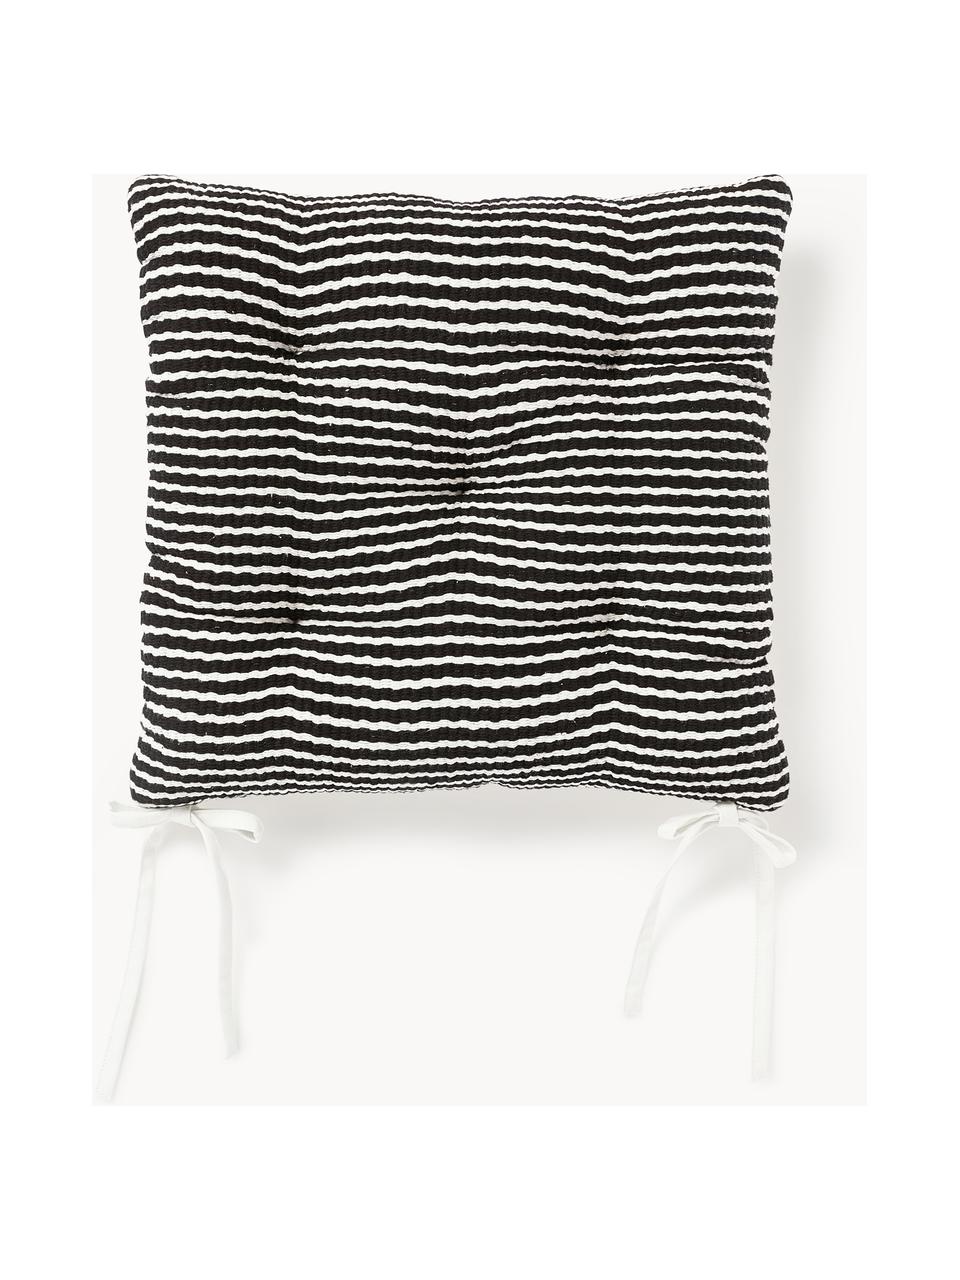 Gestreifte Baumwoll-Sitzkissen Silla, 2 Stück, Hülle: 100 % Baumwolle, Schwarz, Weiß, B 40 x L 40 cm